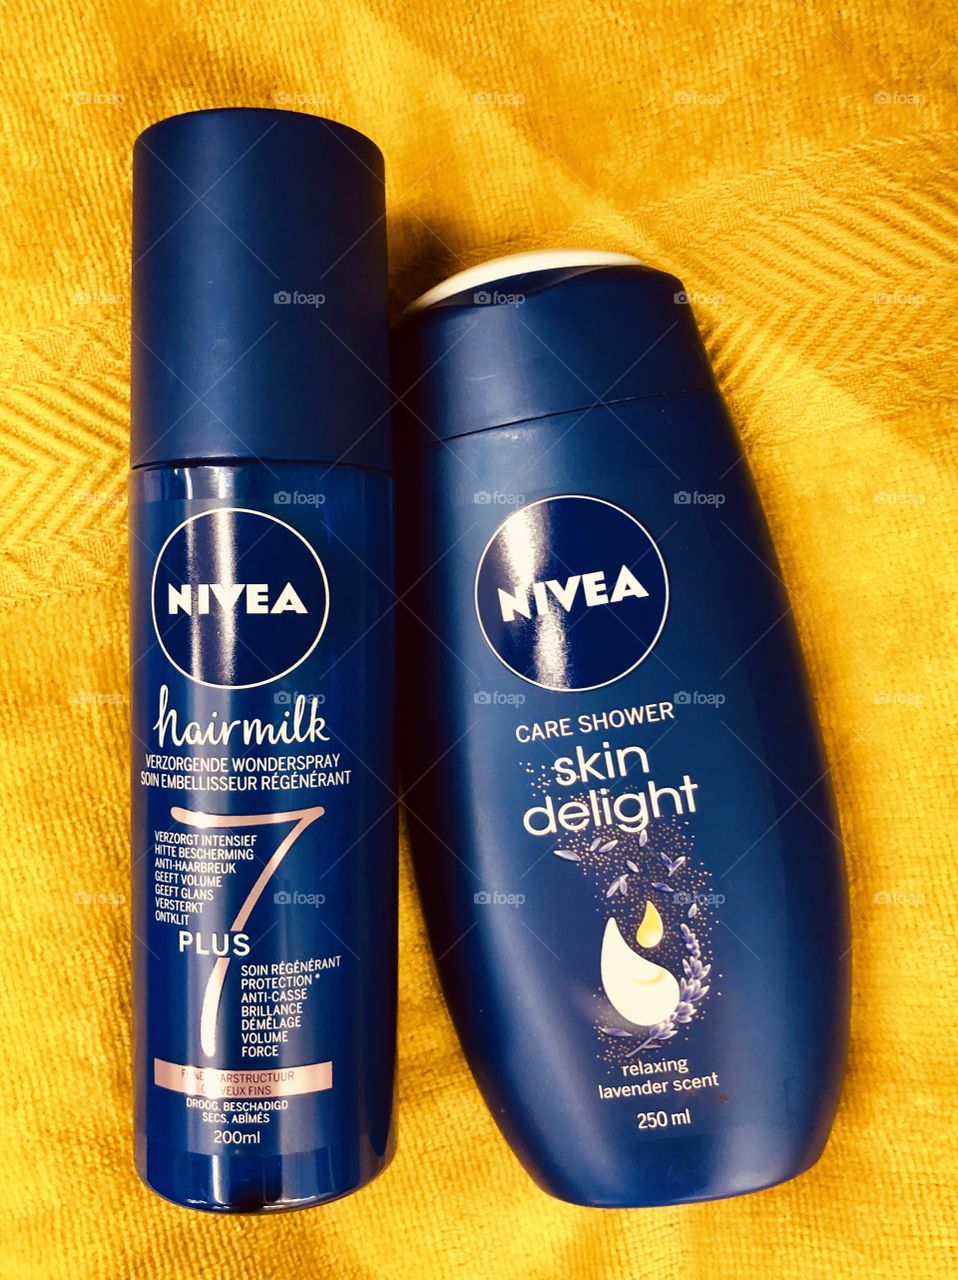 Nivea hair milk skin delight shower gel Nivea reclame   Cleaning gel beauty tretman 